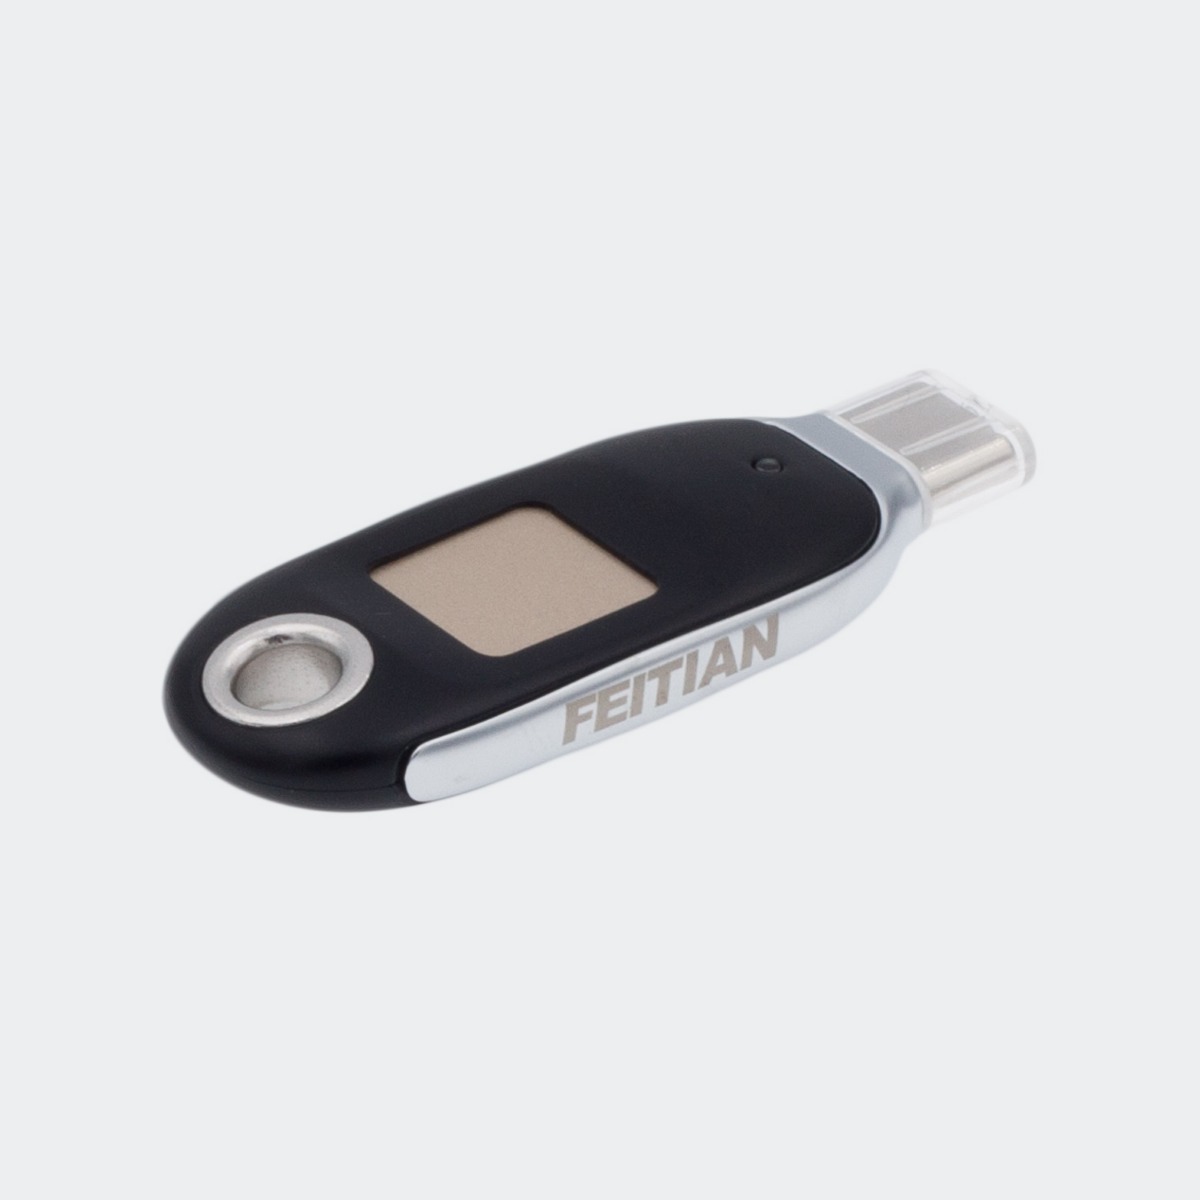 Feitian Biopass Fido2 K26 USB-C